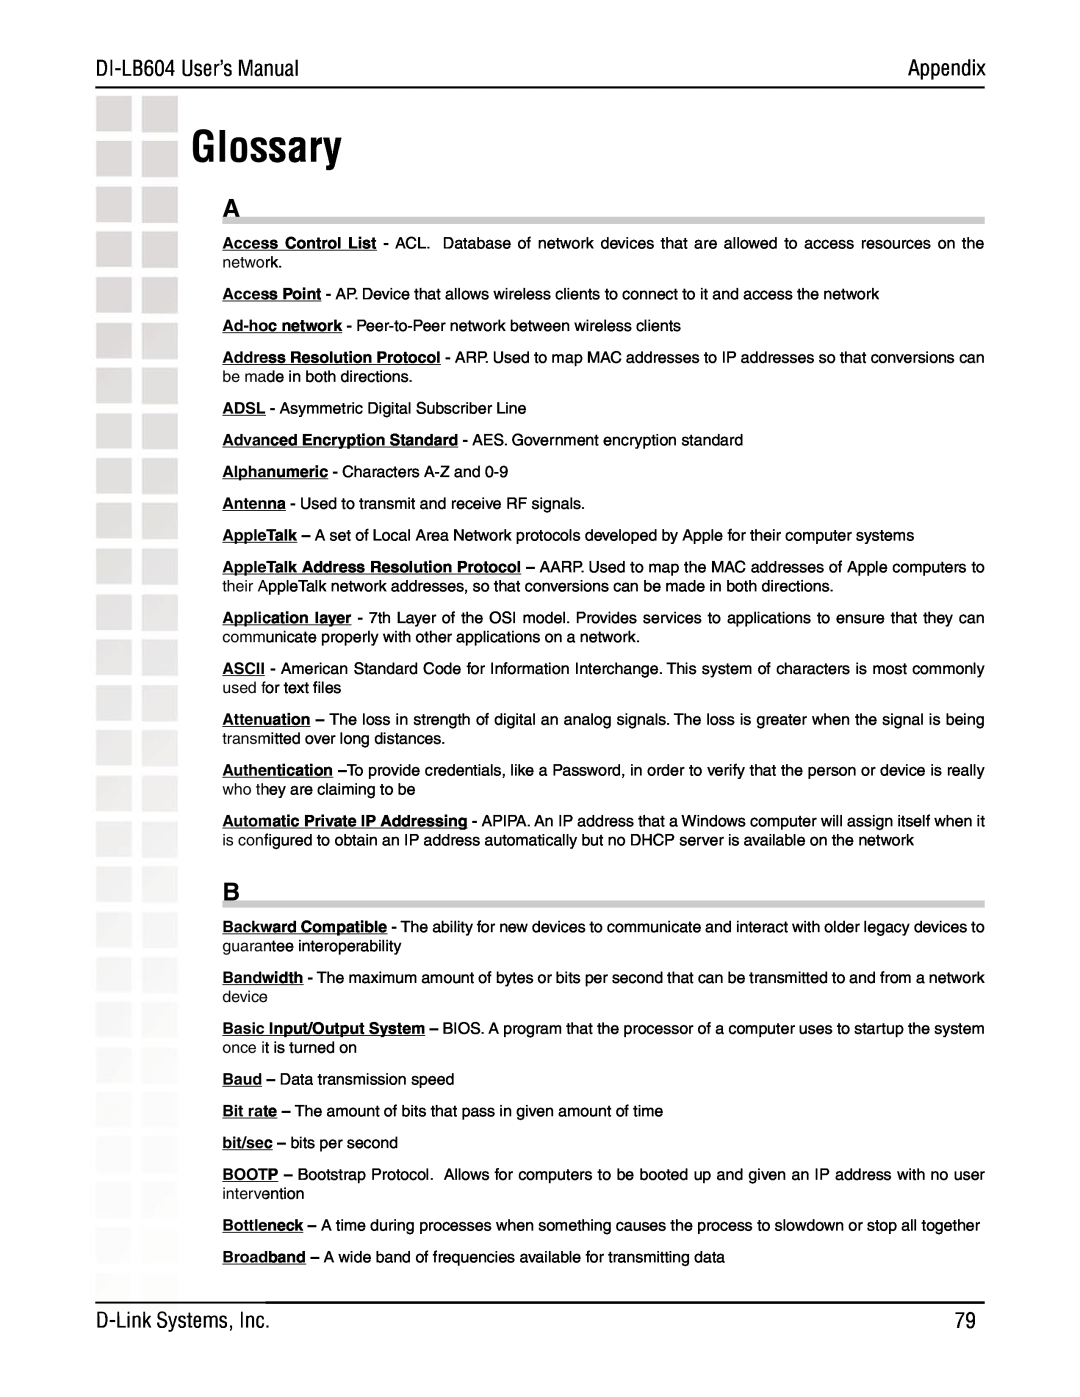 D-Link DI-LB604 manual Glossary, Appendix 